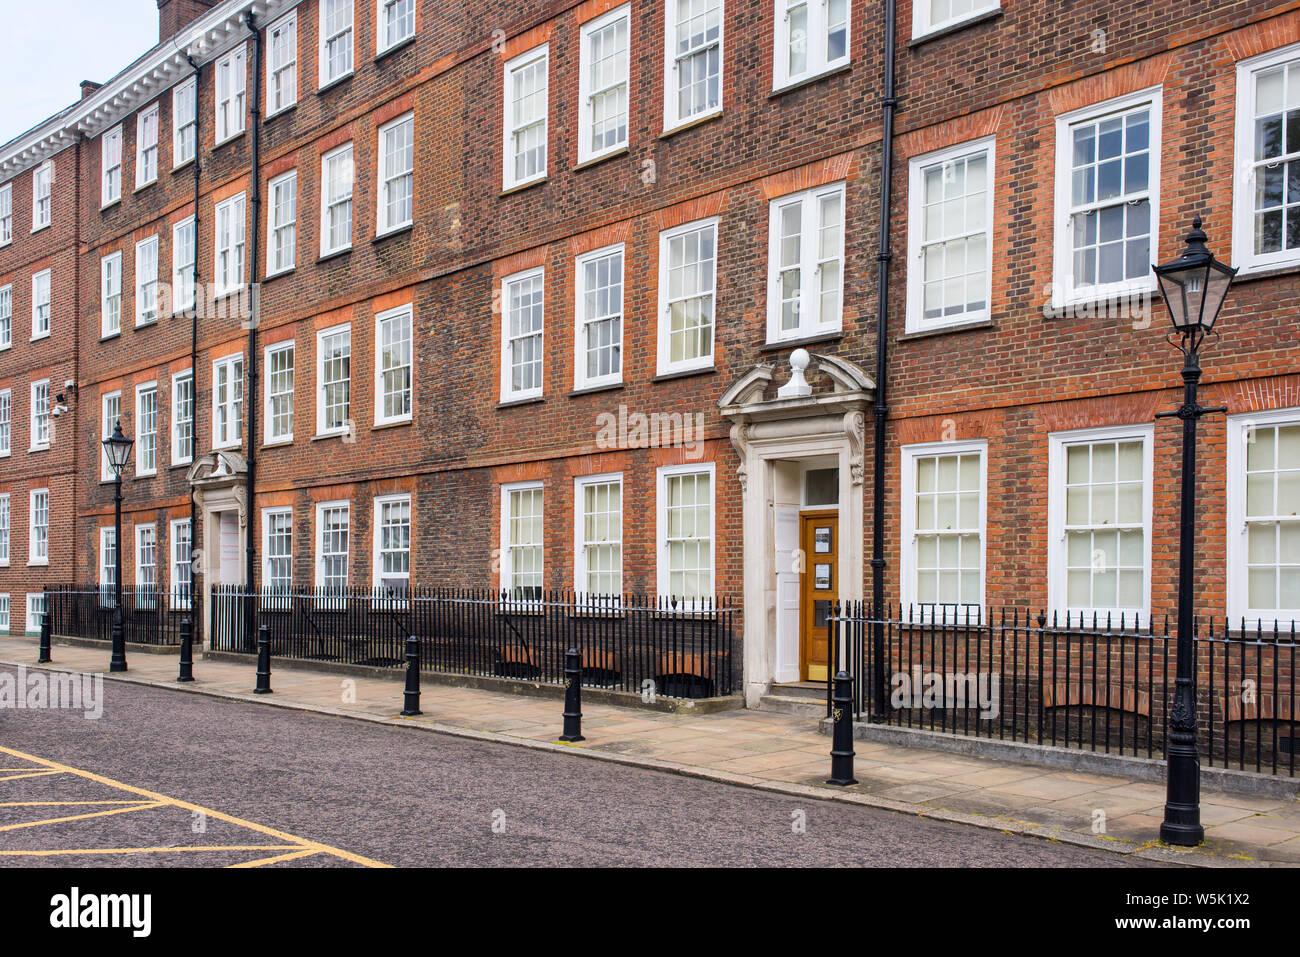 Klassische historische Apartments Gebäude im Georgianischen britischen Englischen Stil mit weißen Fenstern und Red brick wall in der City von London Stockfoto